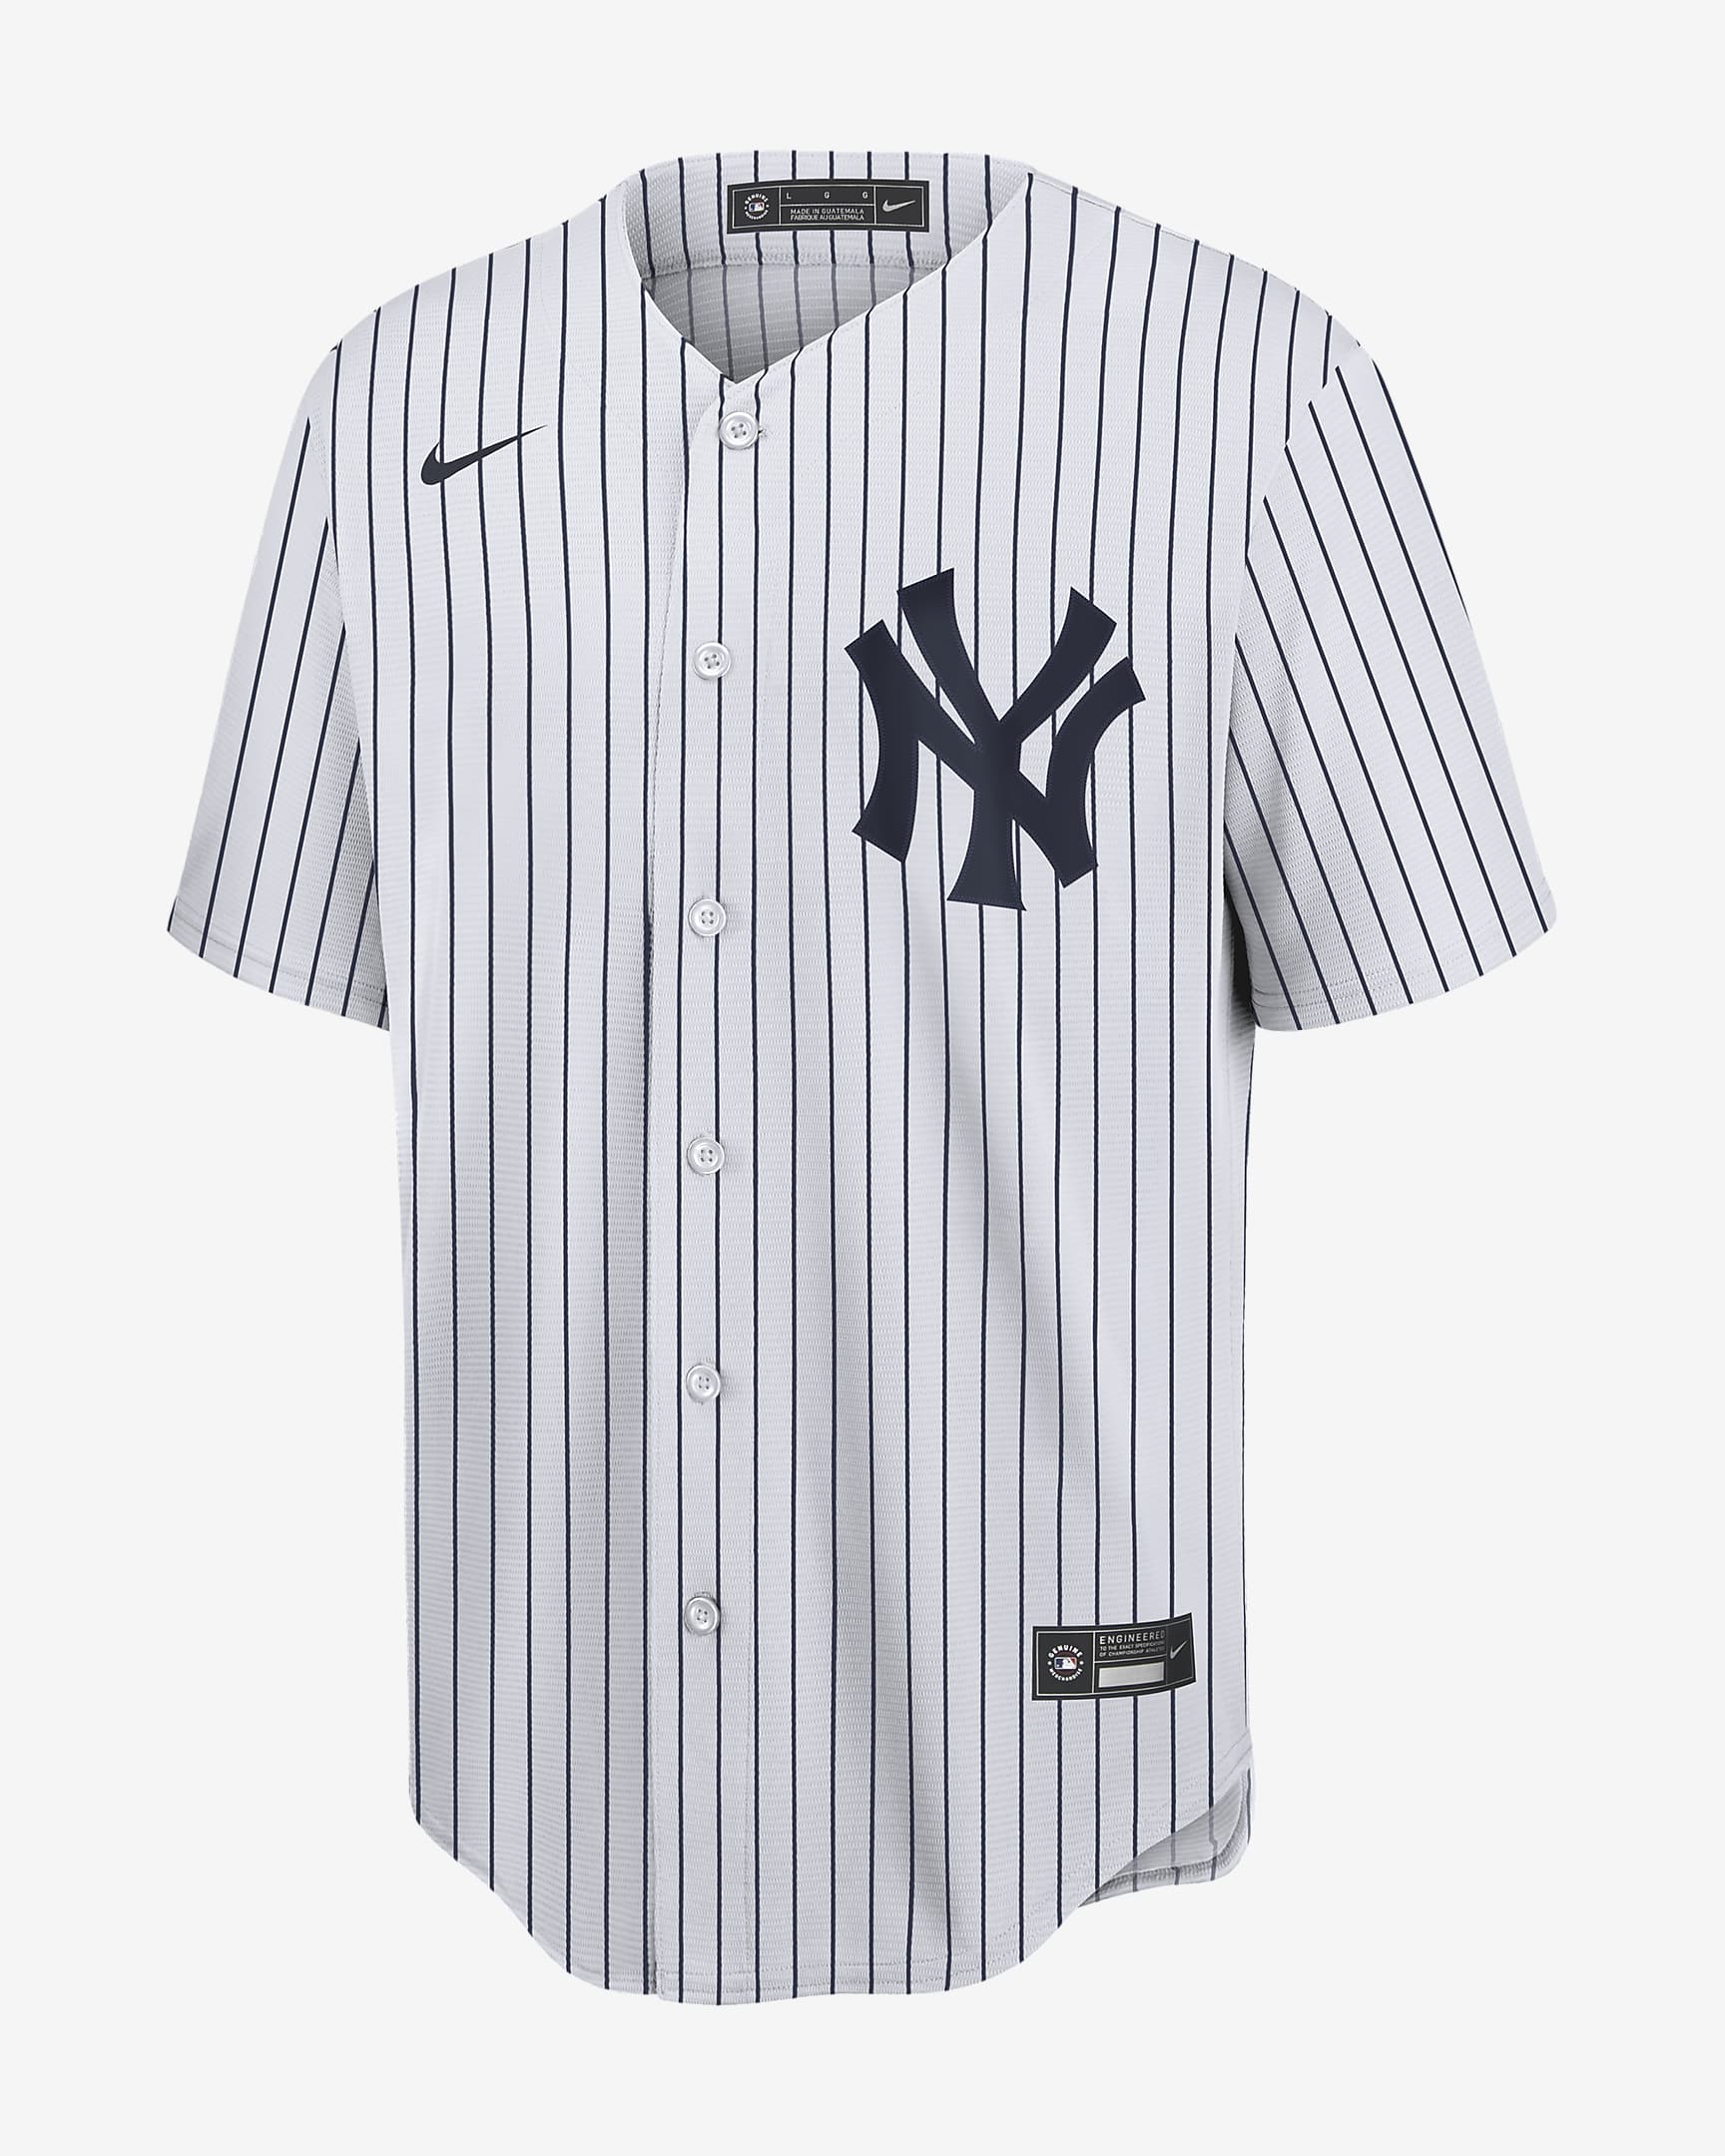 MLB New York Yankees (Gerrit Cole) Men's Replica Baseball Jersey. Nike.com